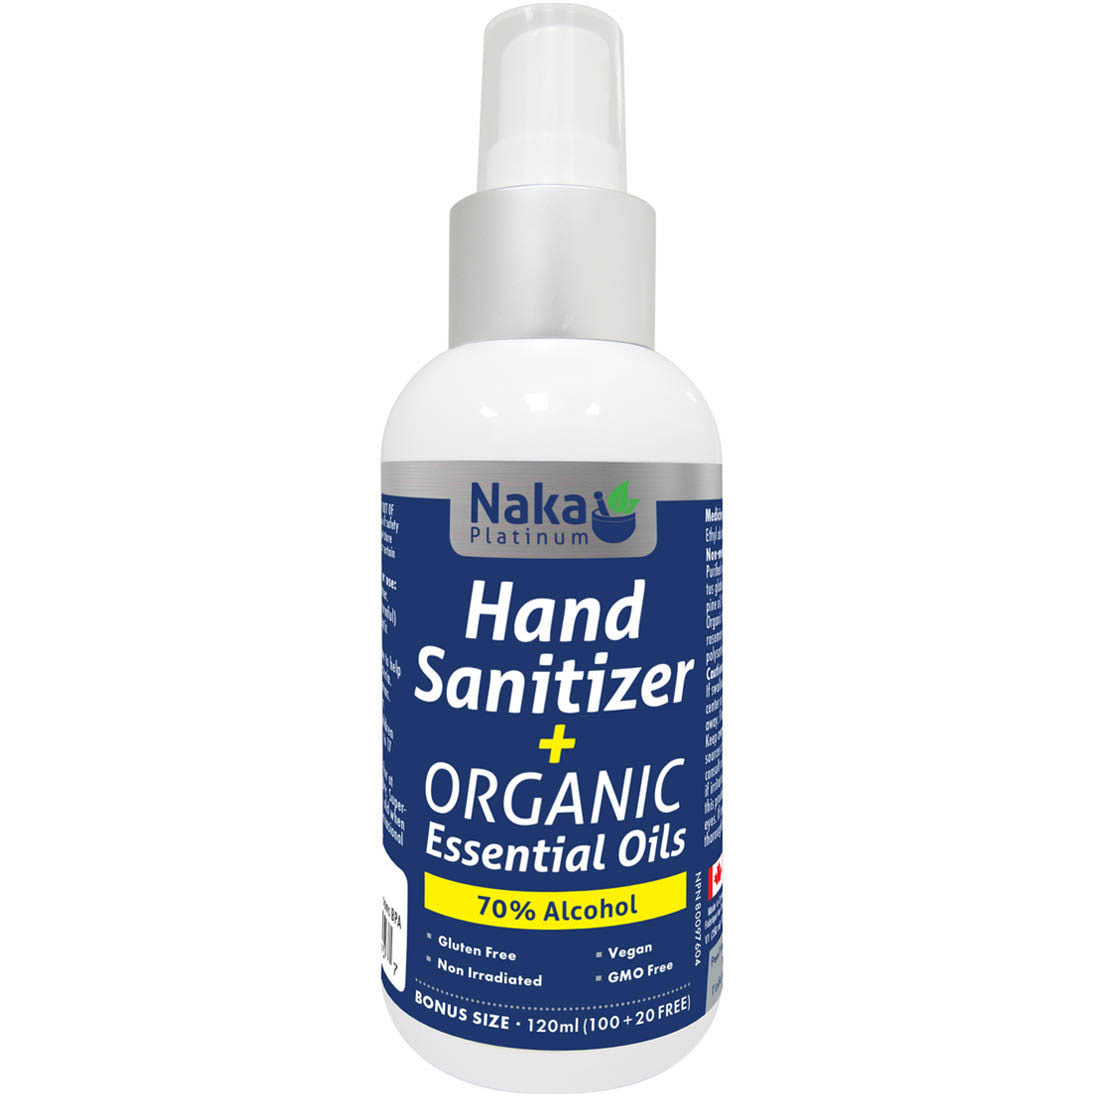 Hand Sanitizer + Organic Essential Oil (70% Alcohol) – 120ml + Bonus Item!